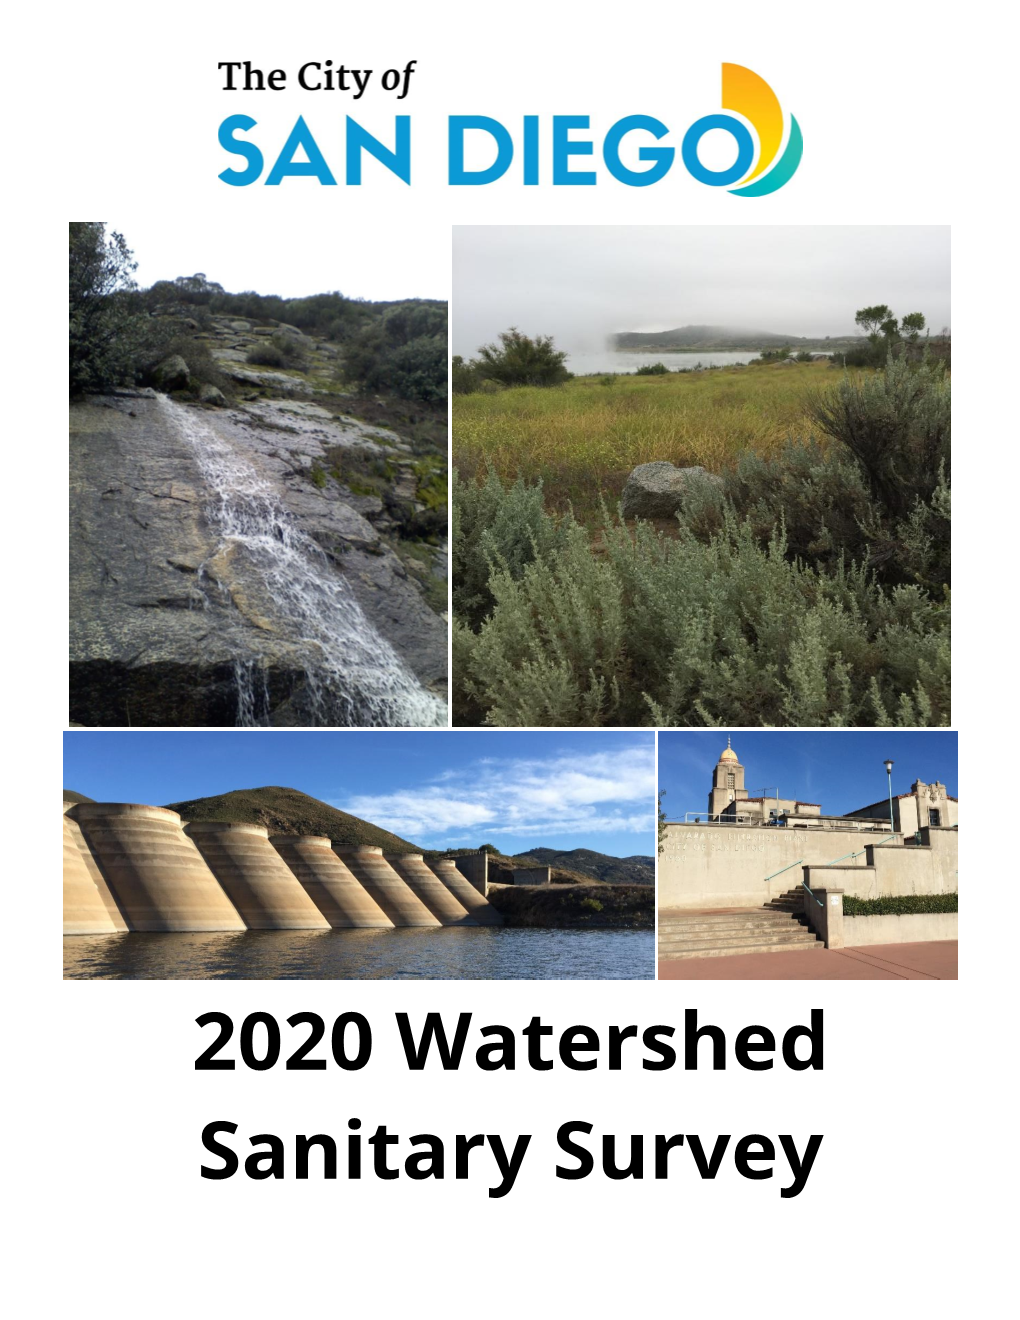 2020 Watershed Sanitary Survey